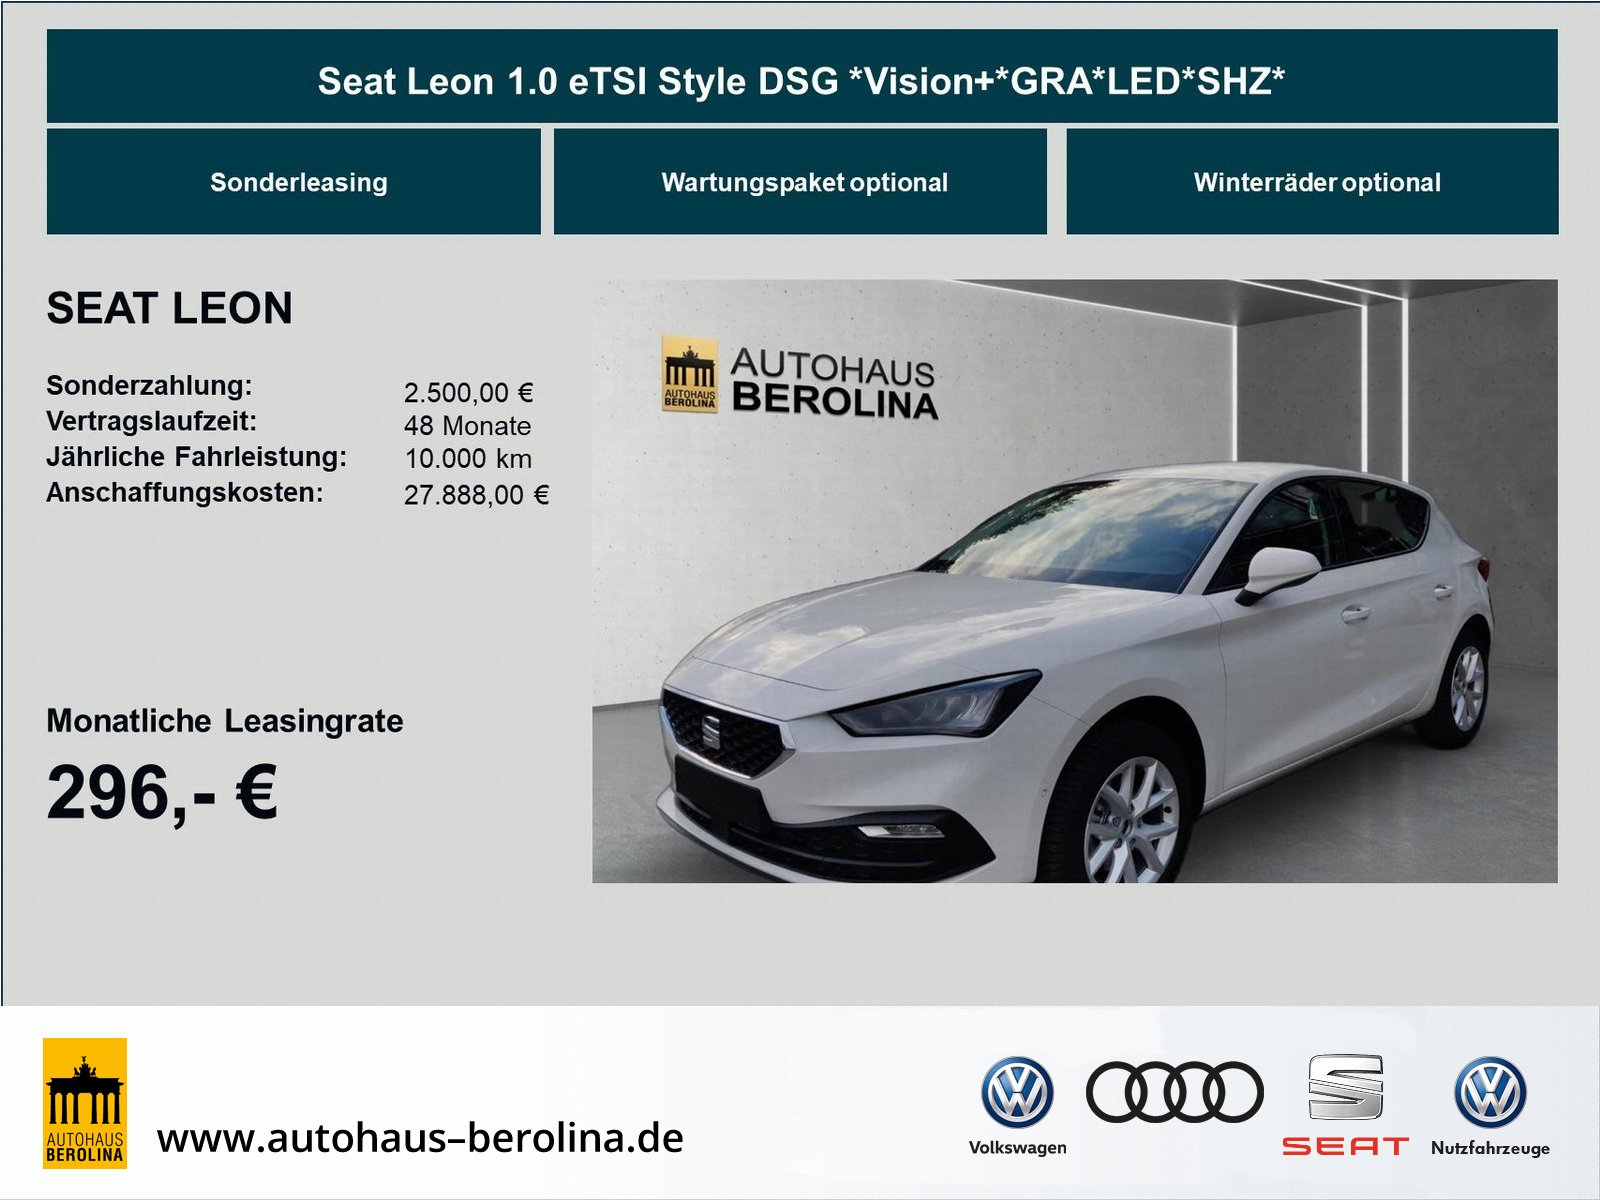 Seat Leon 1.0 eTSI Style Vision